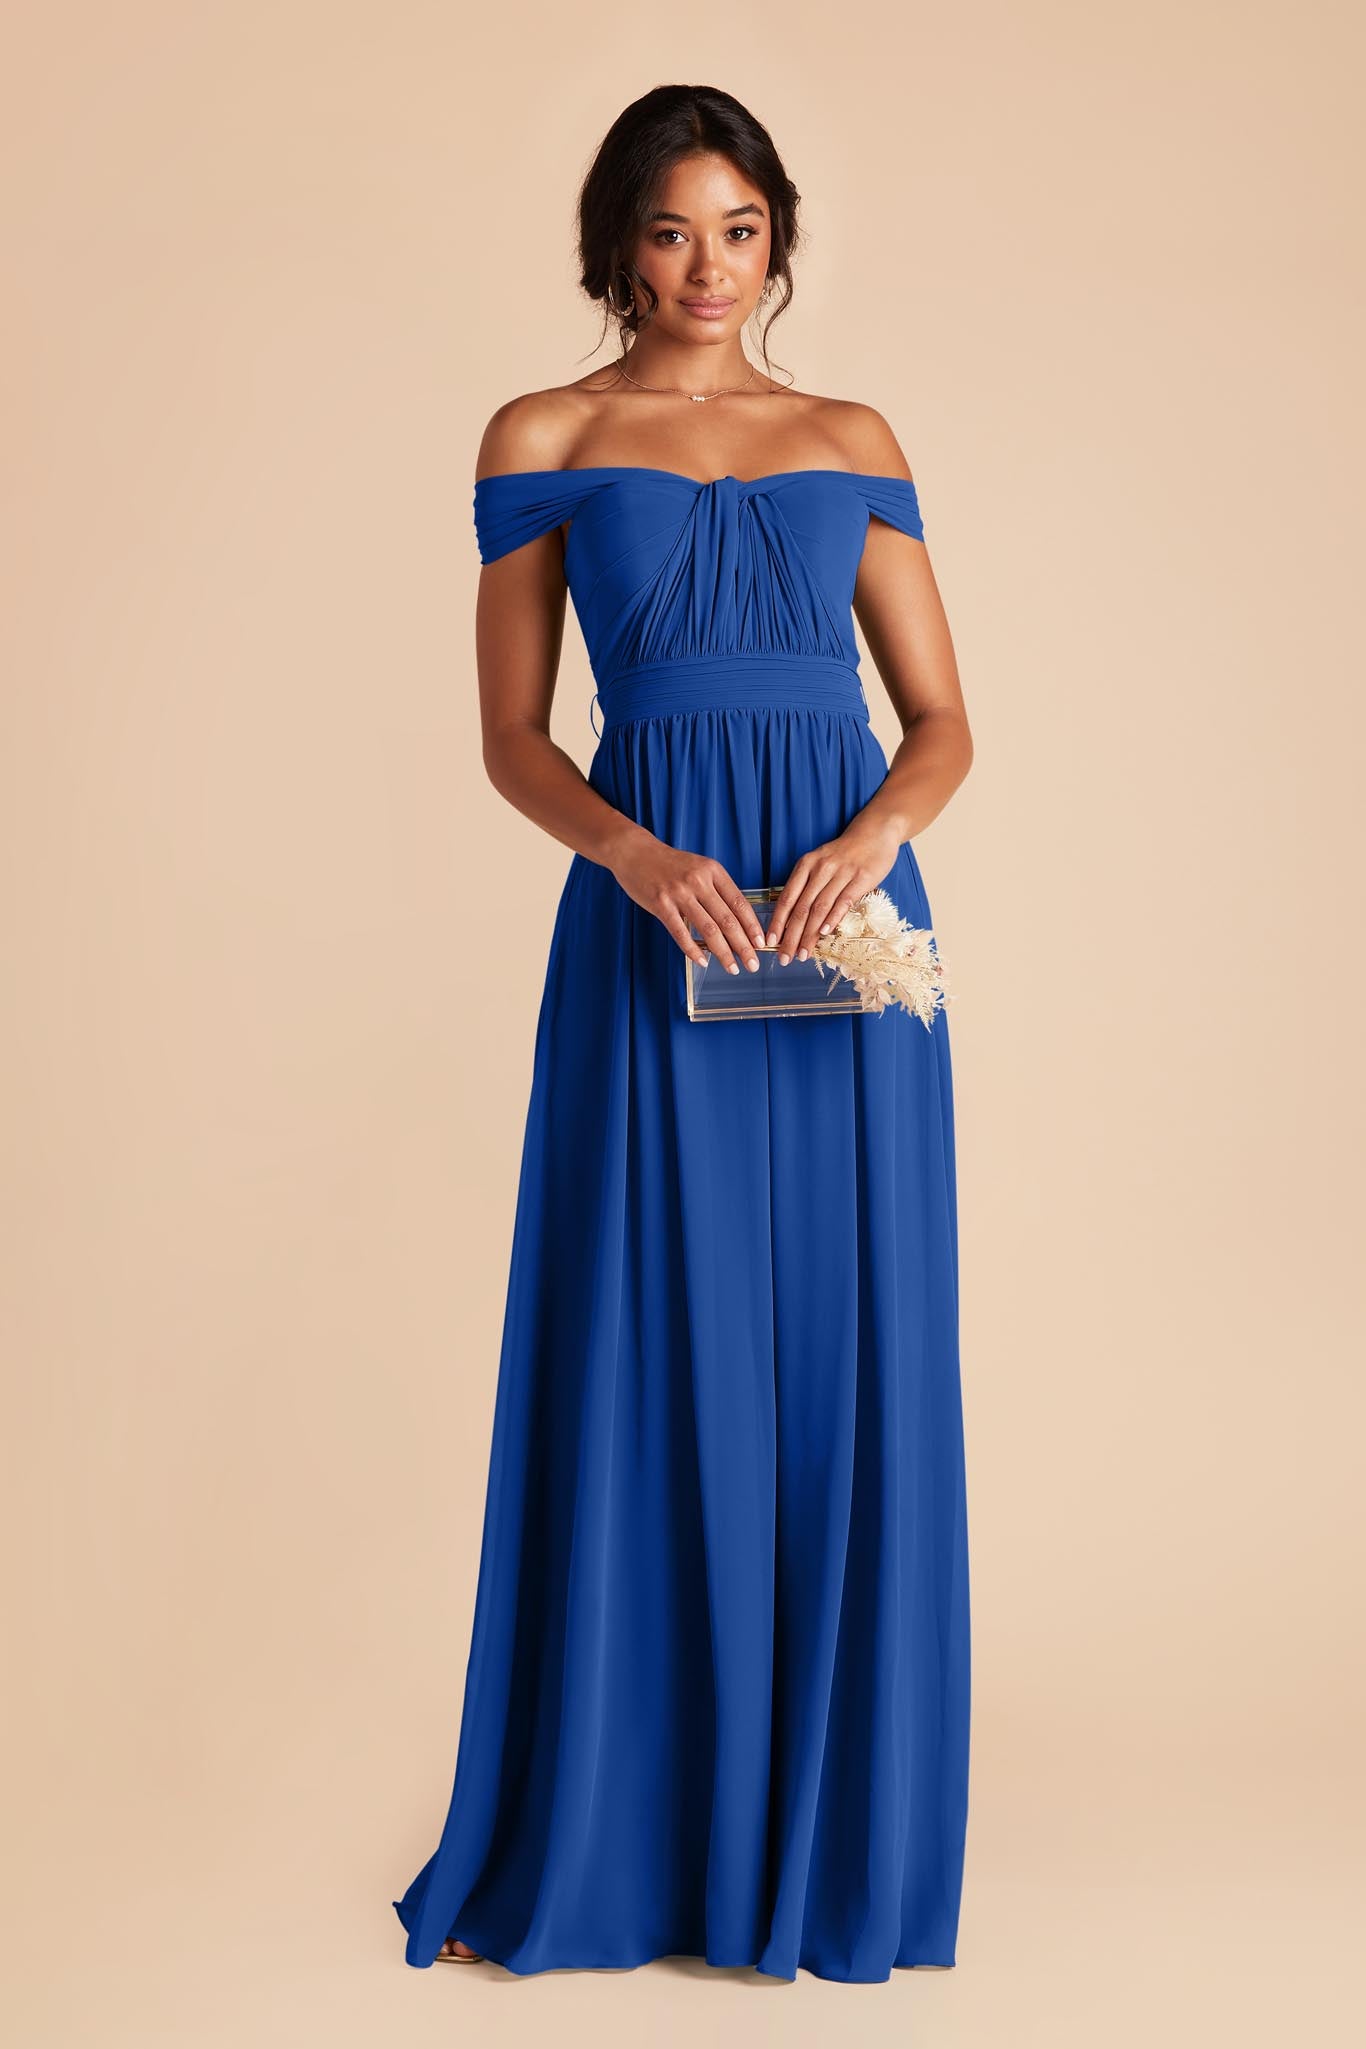 Cobalt Blue Grace Convertible Dress by Birdy Grey